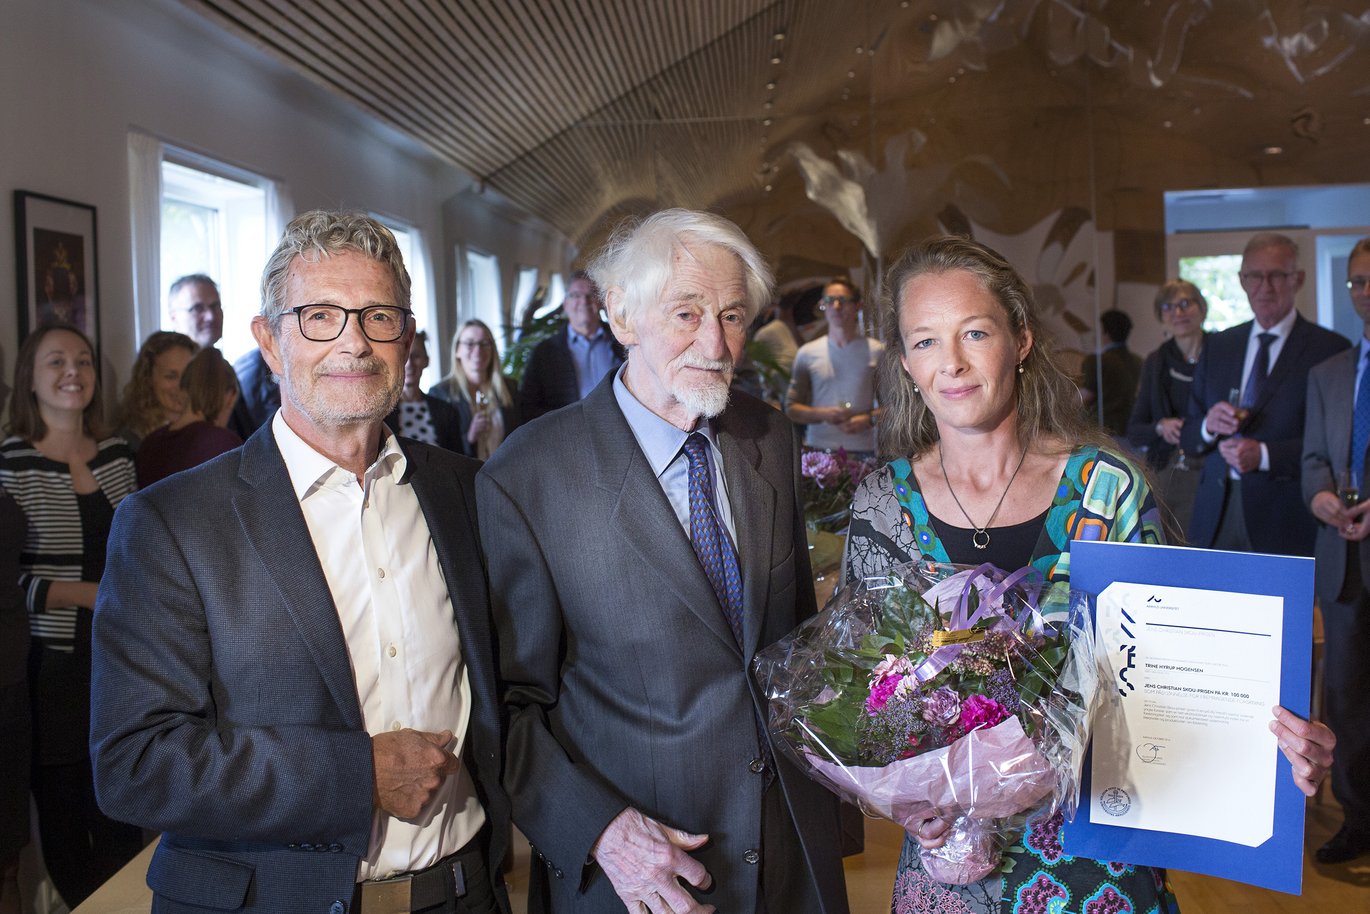 Trine Hyrup Mogensen hilste ved prisoverrækkelsen på nobelprismodtager Jens Chr. Skou, som har lagt navn til den nye talentpris. Foto: Lars Kruse/AU.